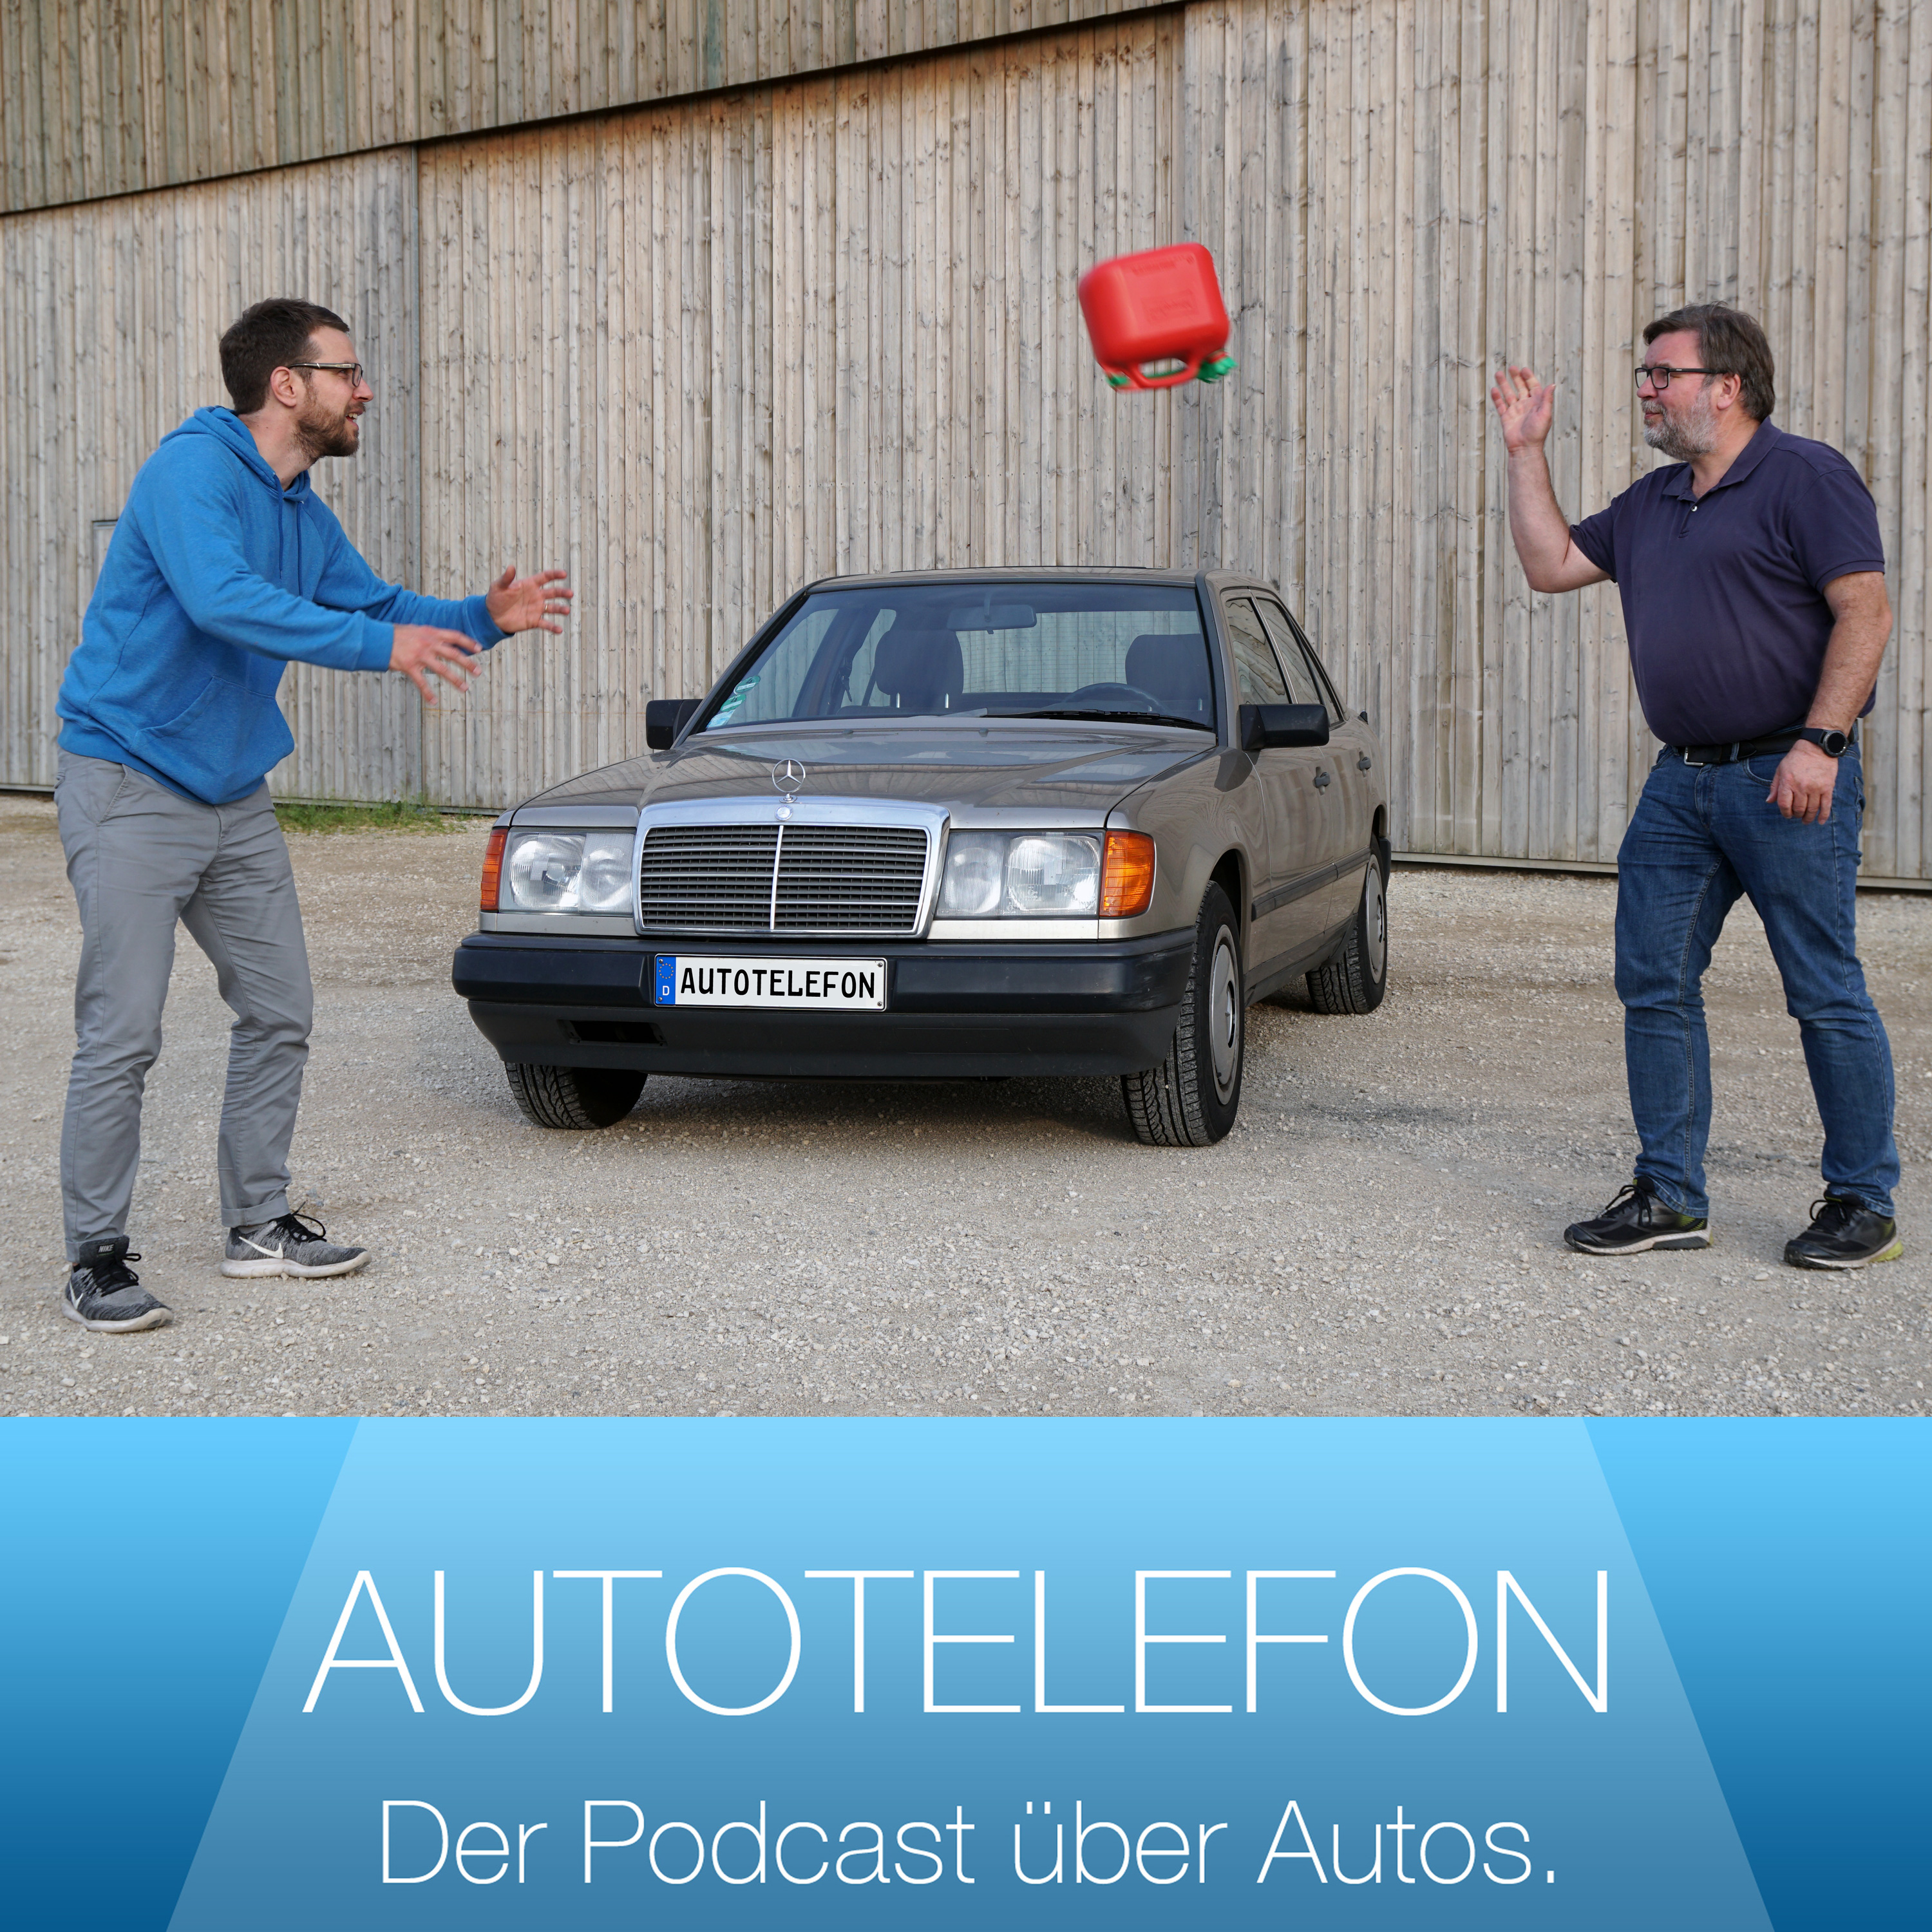 Billigautos - hat Mehmet Scholl recht? - Autotelefon - Der Podcast über  Autos.